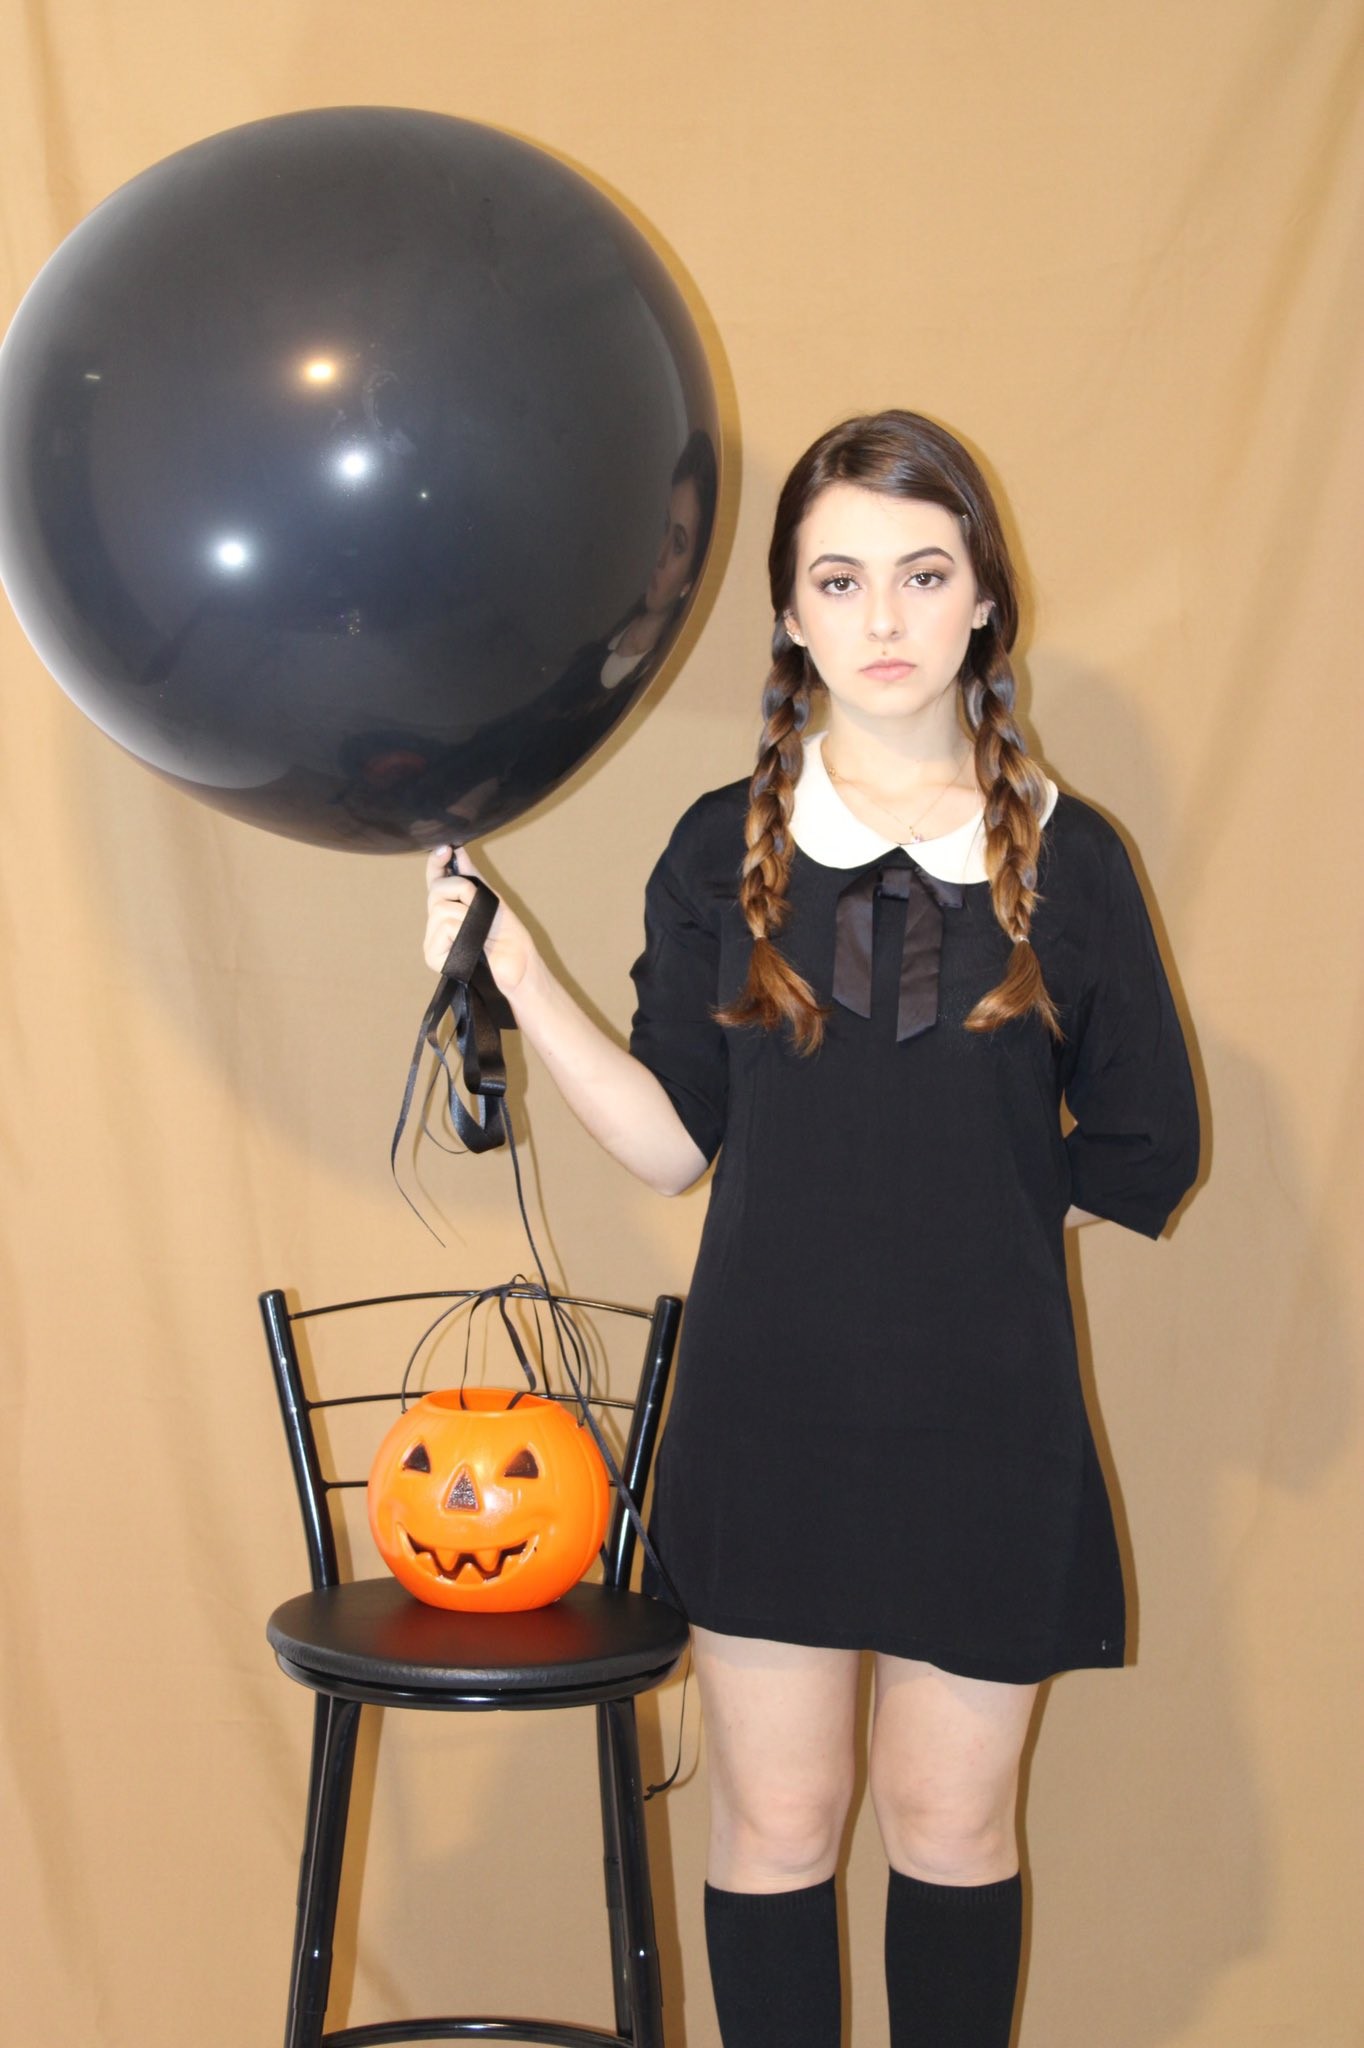 Klara Castanho se fantasiou de Wandinha Addams para o Halloween 2020 (Foto: Reprodução/Instagram)